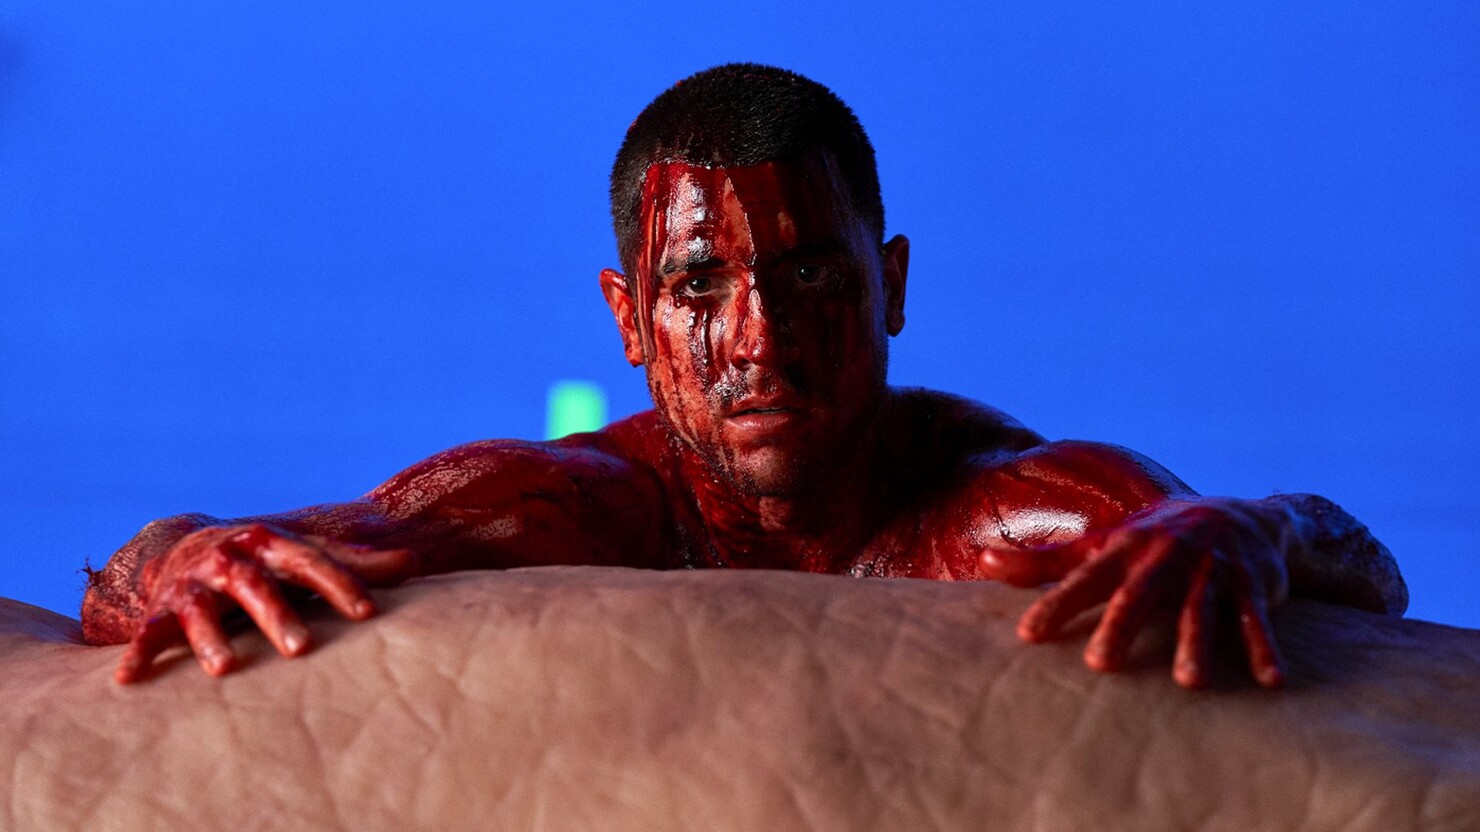 Громадный пенис и "наркота" — фото со съёмок травмирующей сцены из третьего сезона "Пацанов"